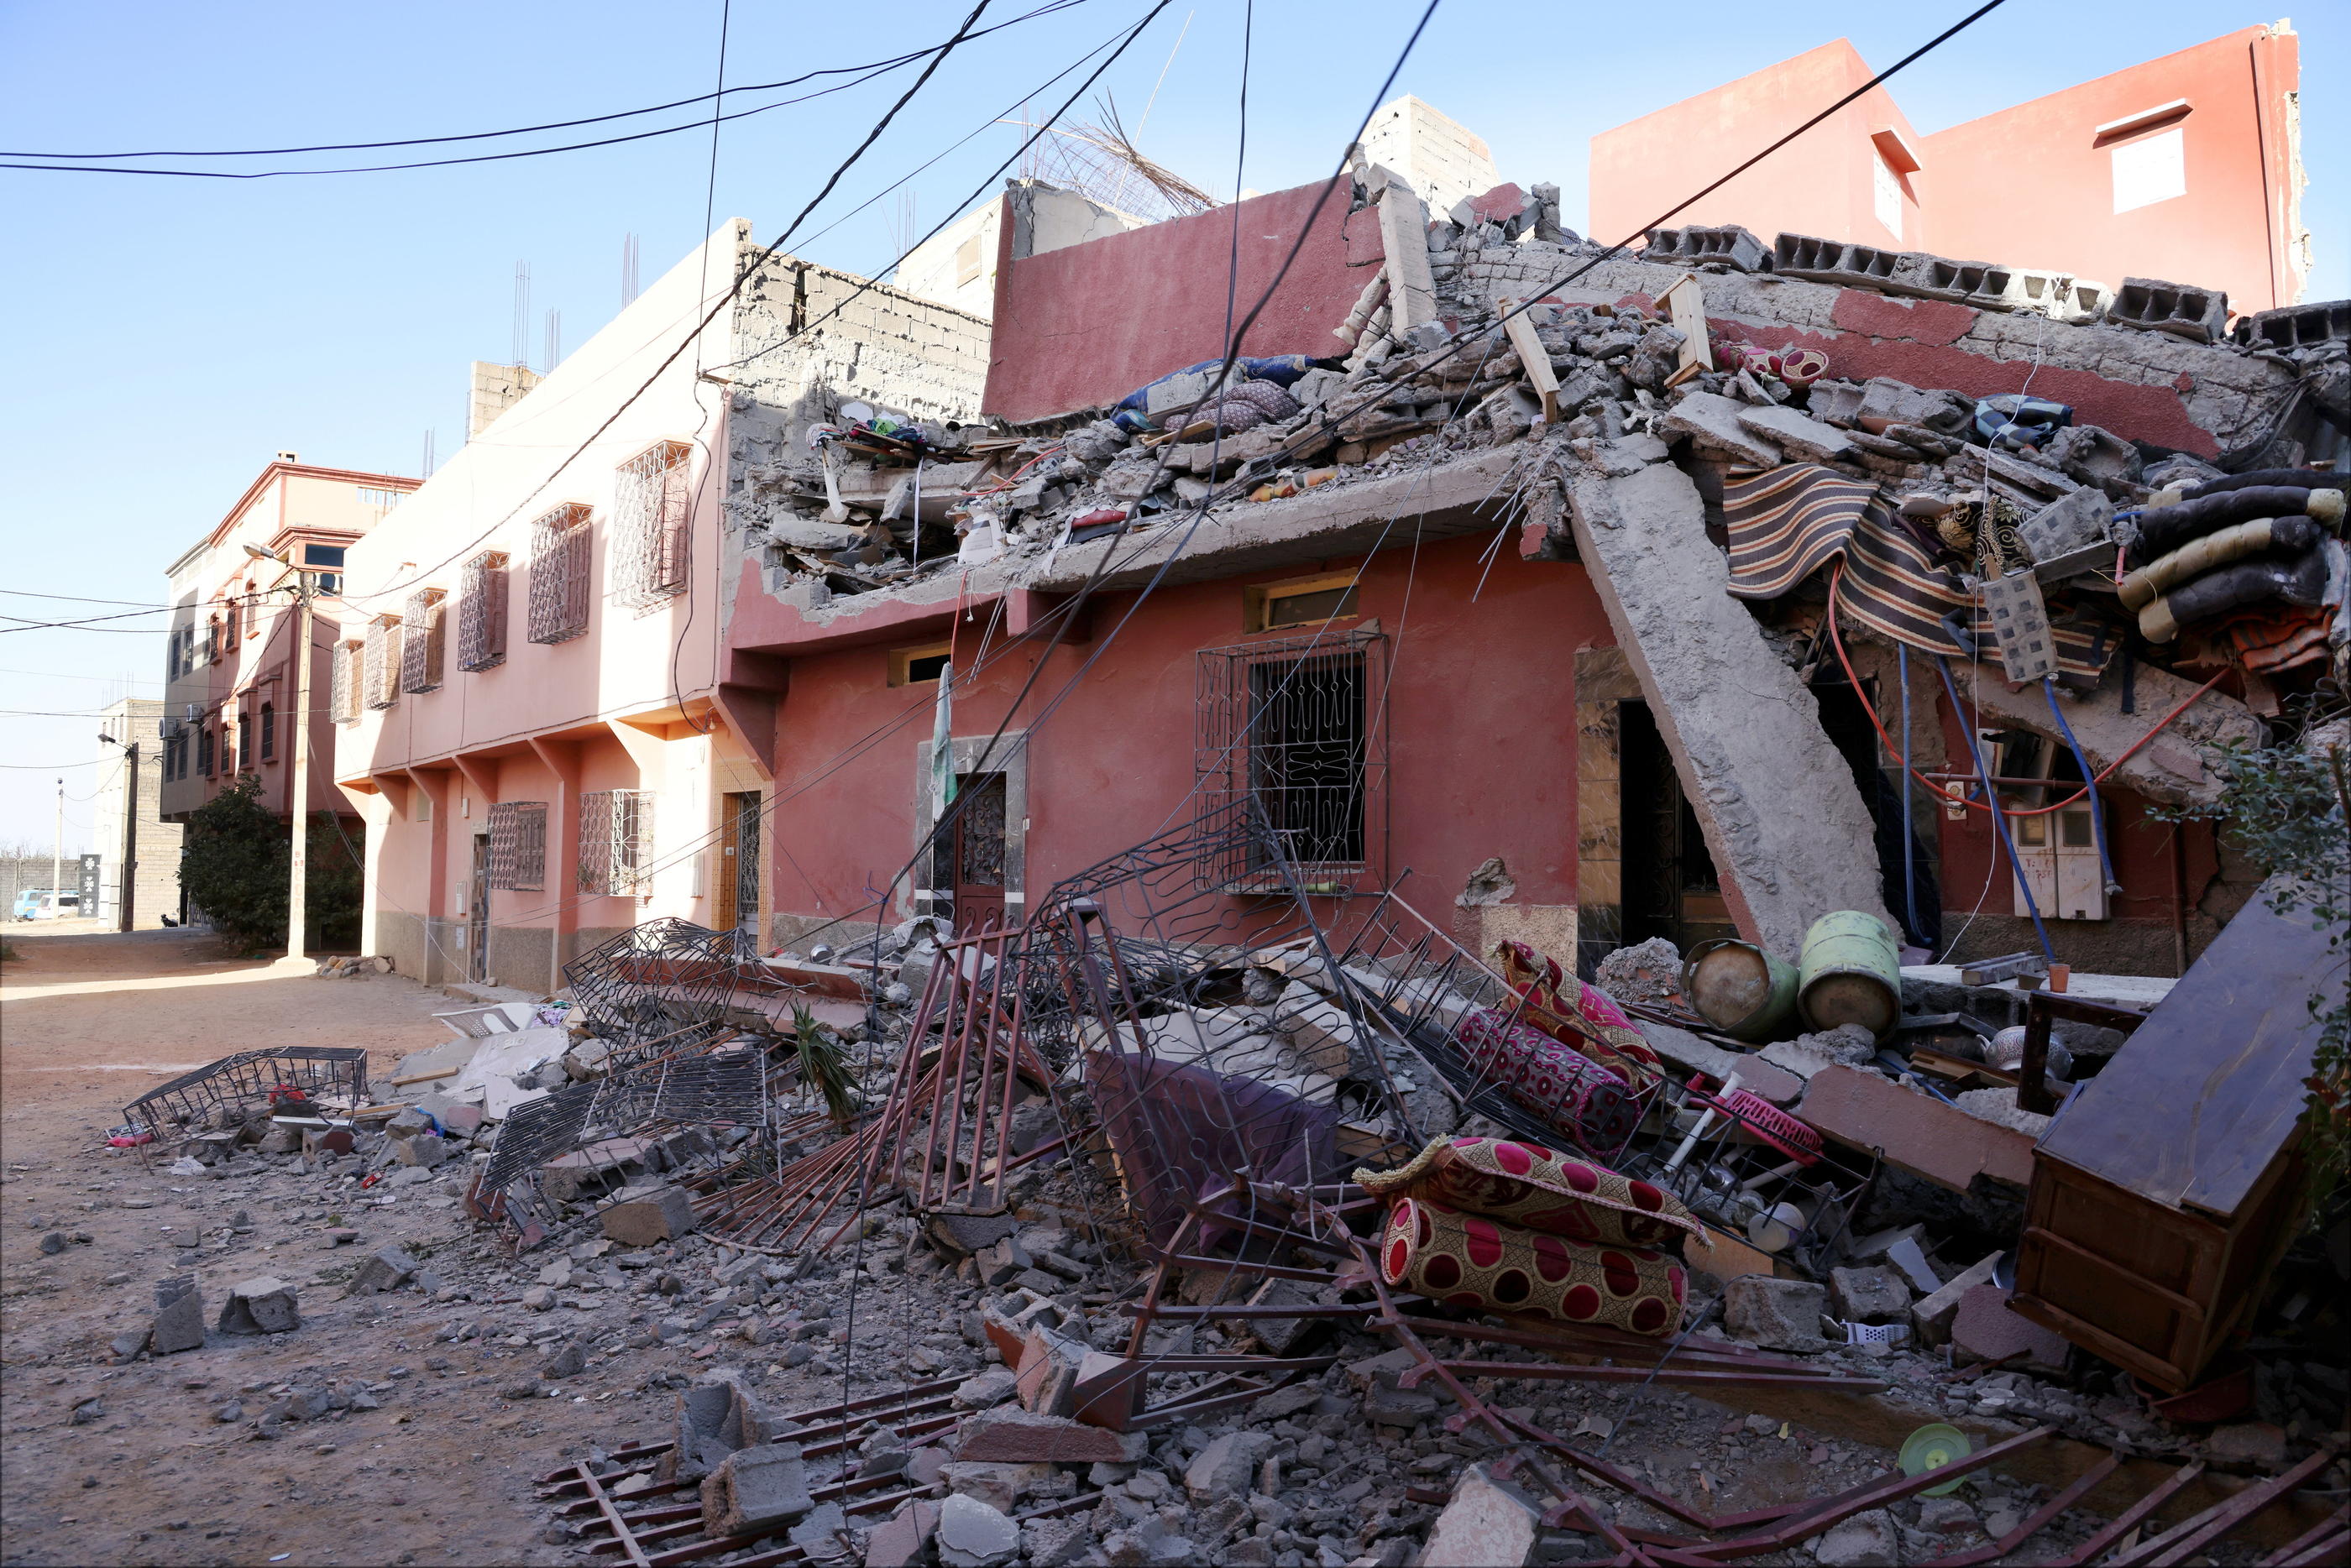 Amizmiz (Maroc), samedi 9 septembre. Des dizaines de maisons du bourg se sont effondrées sur leurs occupants. LP/Jean-Baptiste Quentin